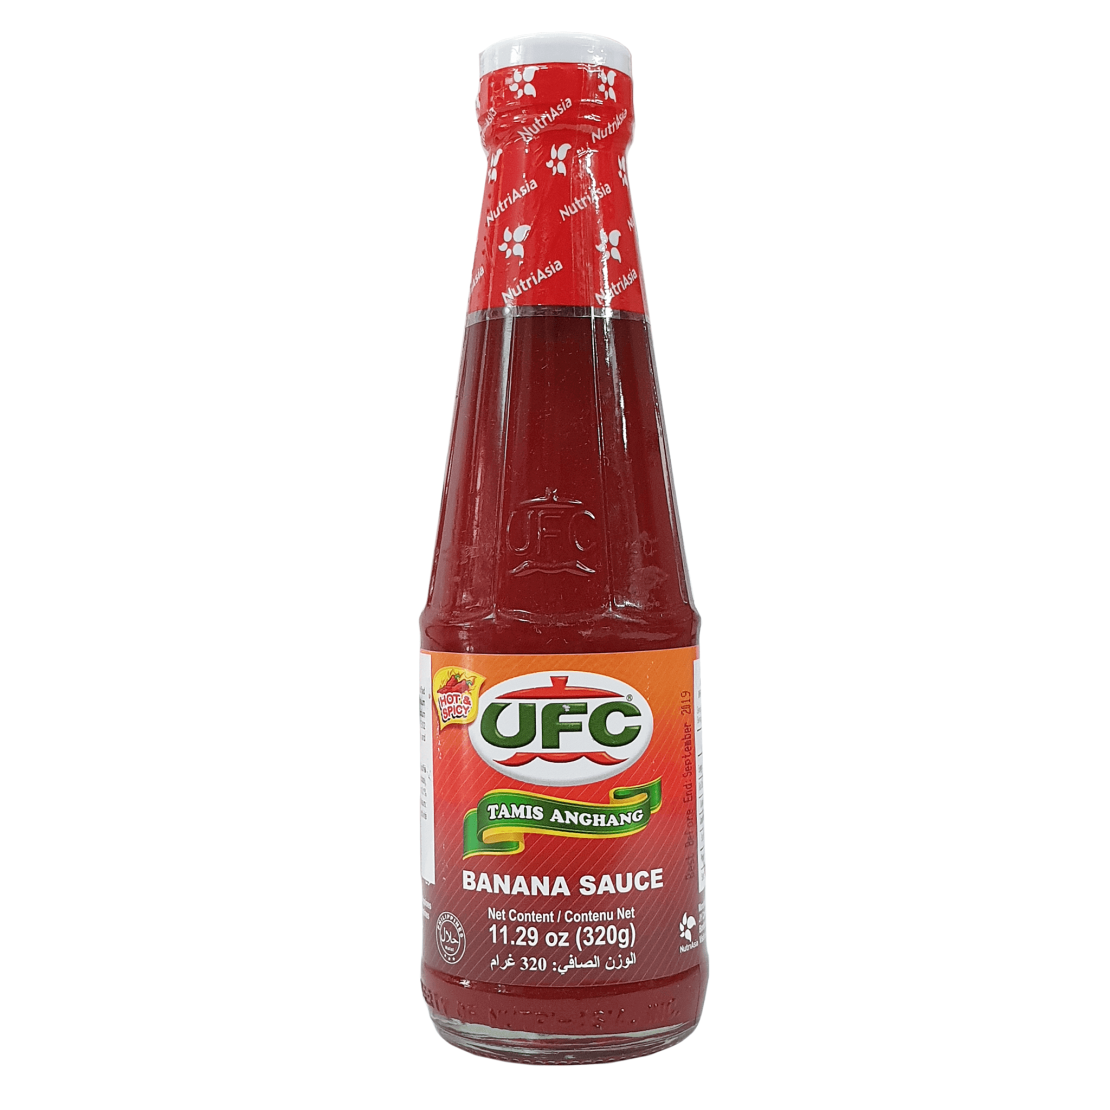 Ufc - Banana Sauce Hot & Spicy 320g